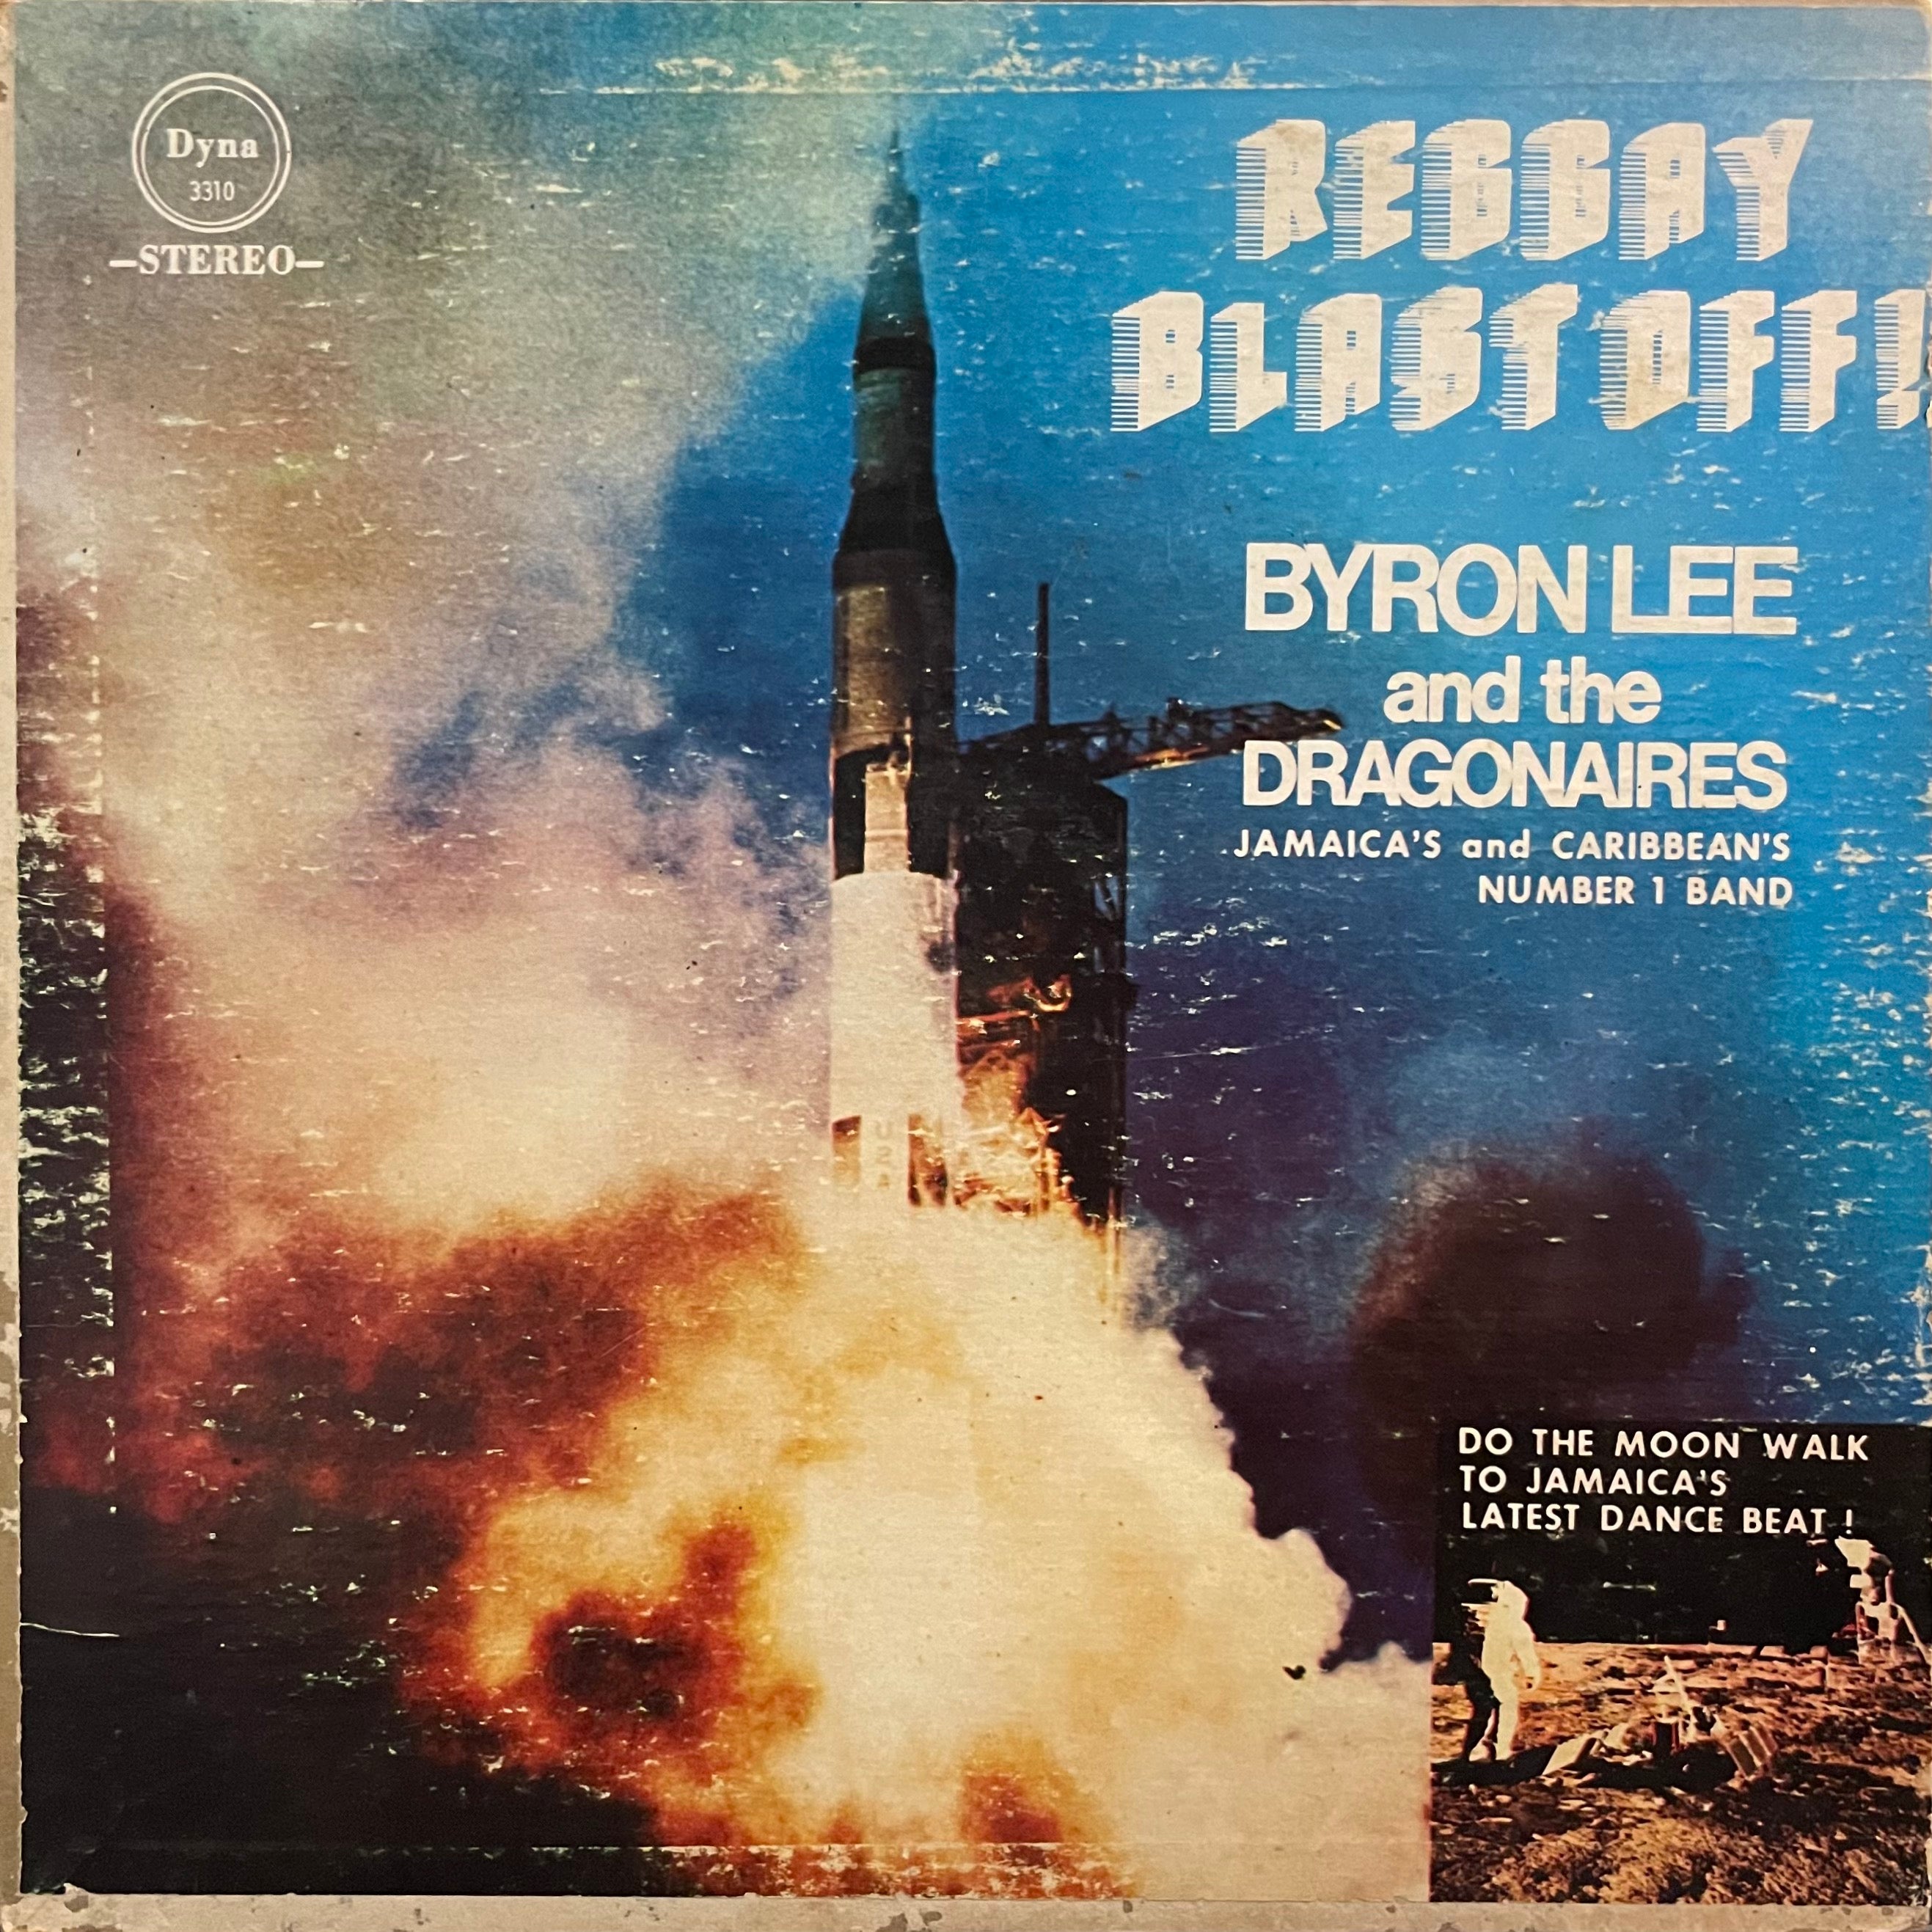 BYRON LEE & BYRON LEE & THE DRAGONAIRES [Reggay Blast Off!]